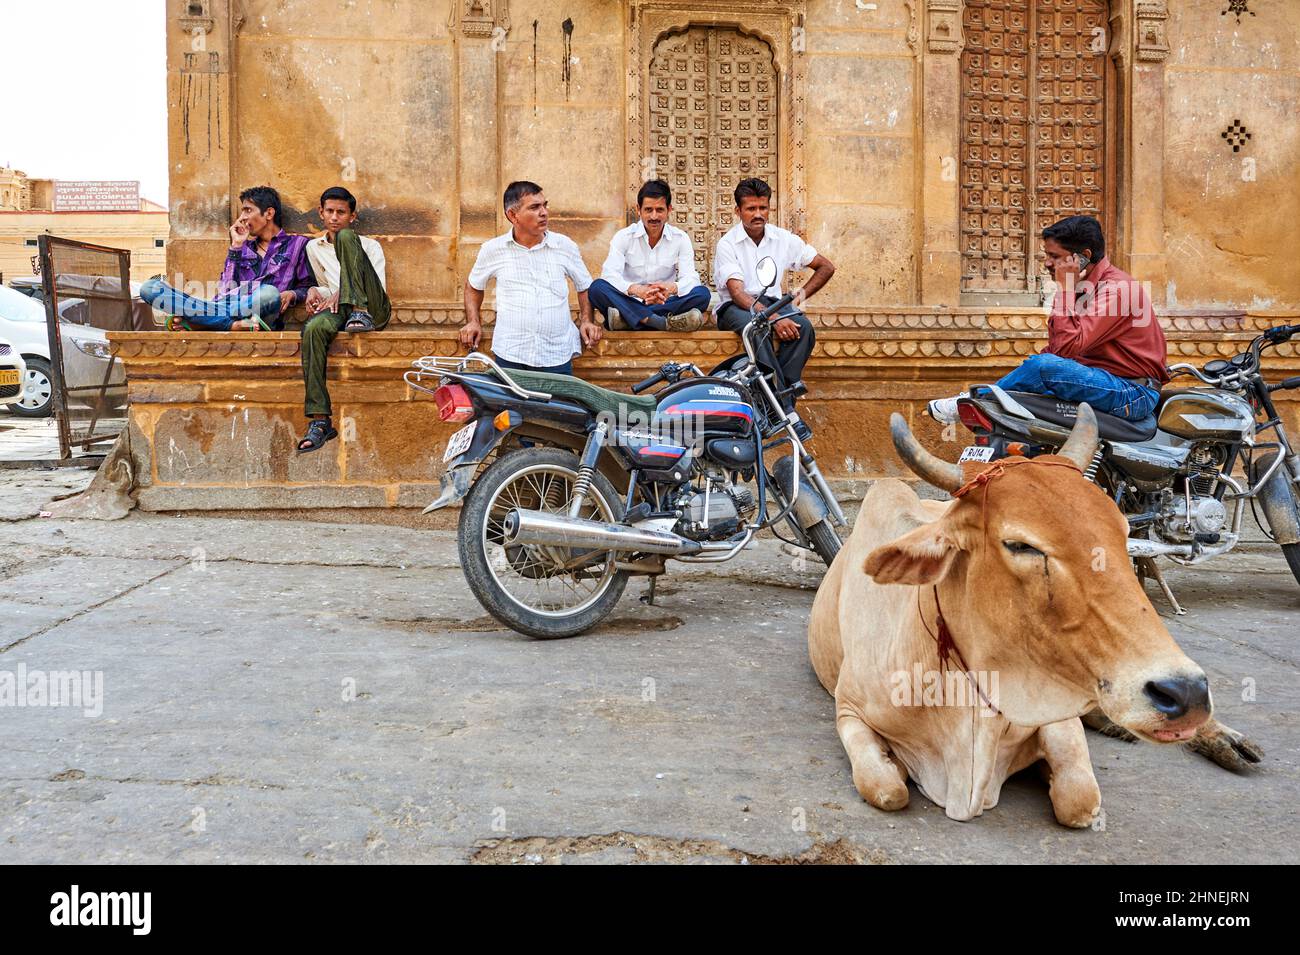 Inde Rajasthan jaisalmer. Vache et gens dans les rues Banque D'Images